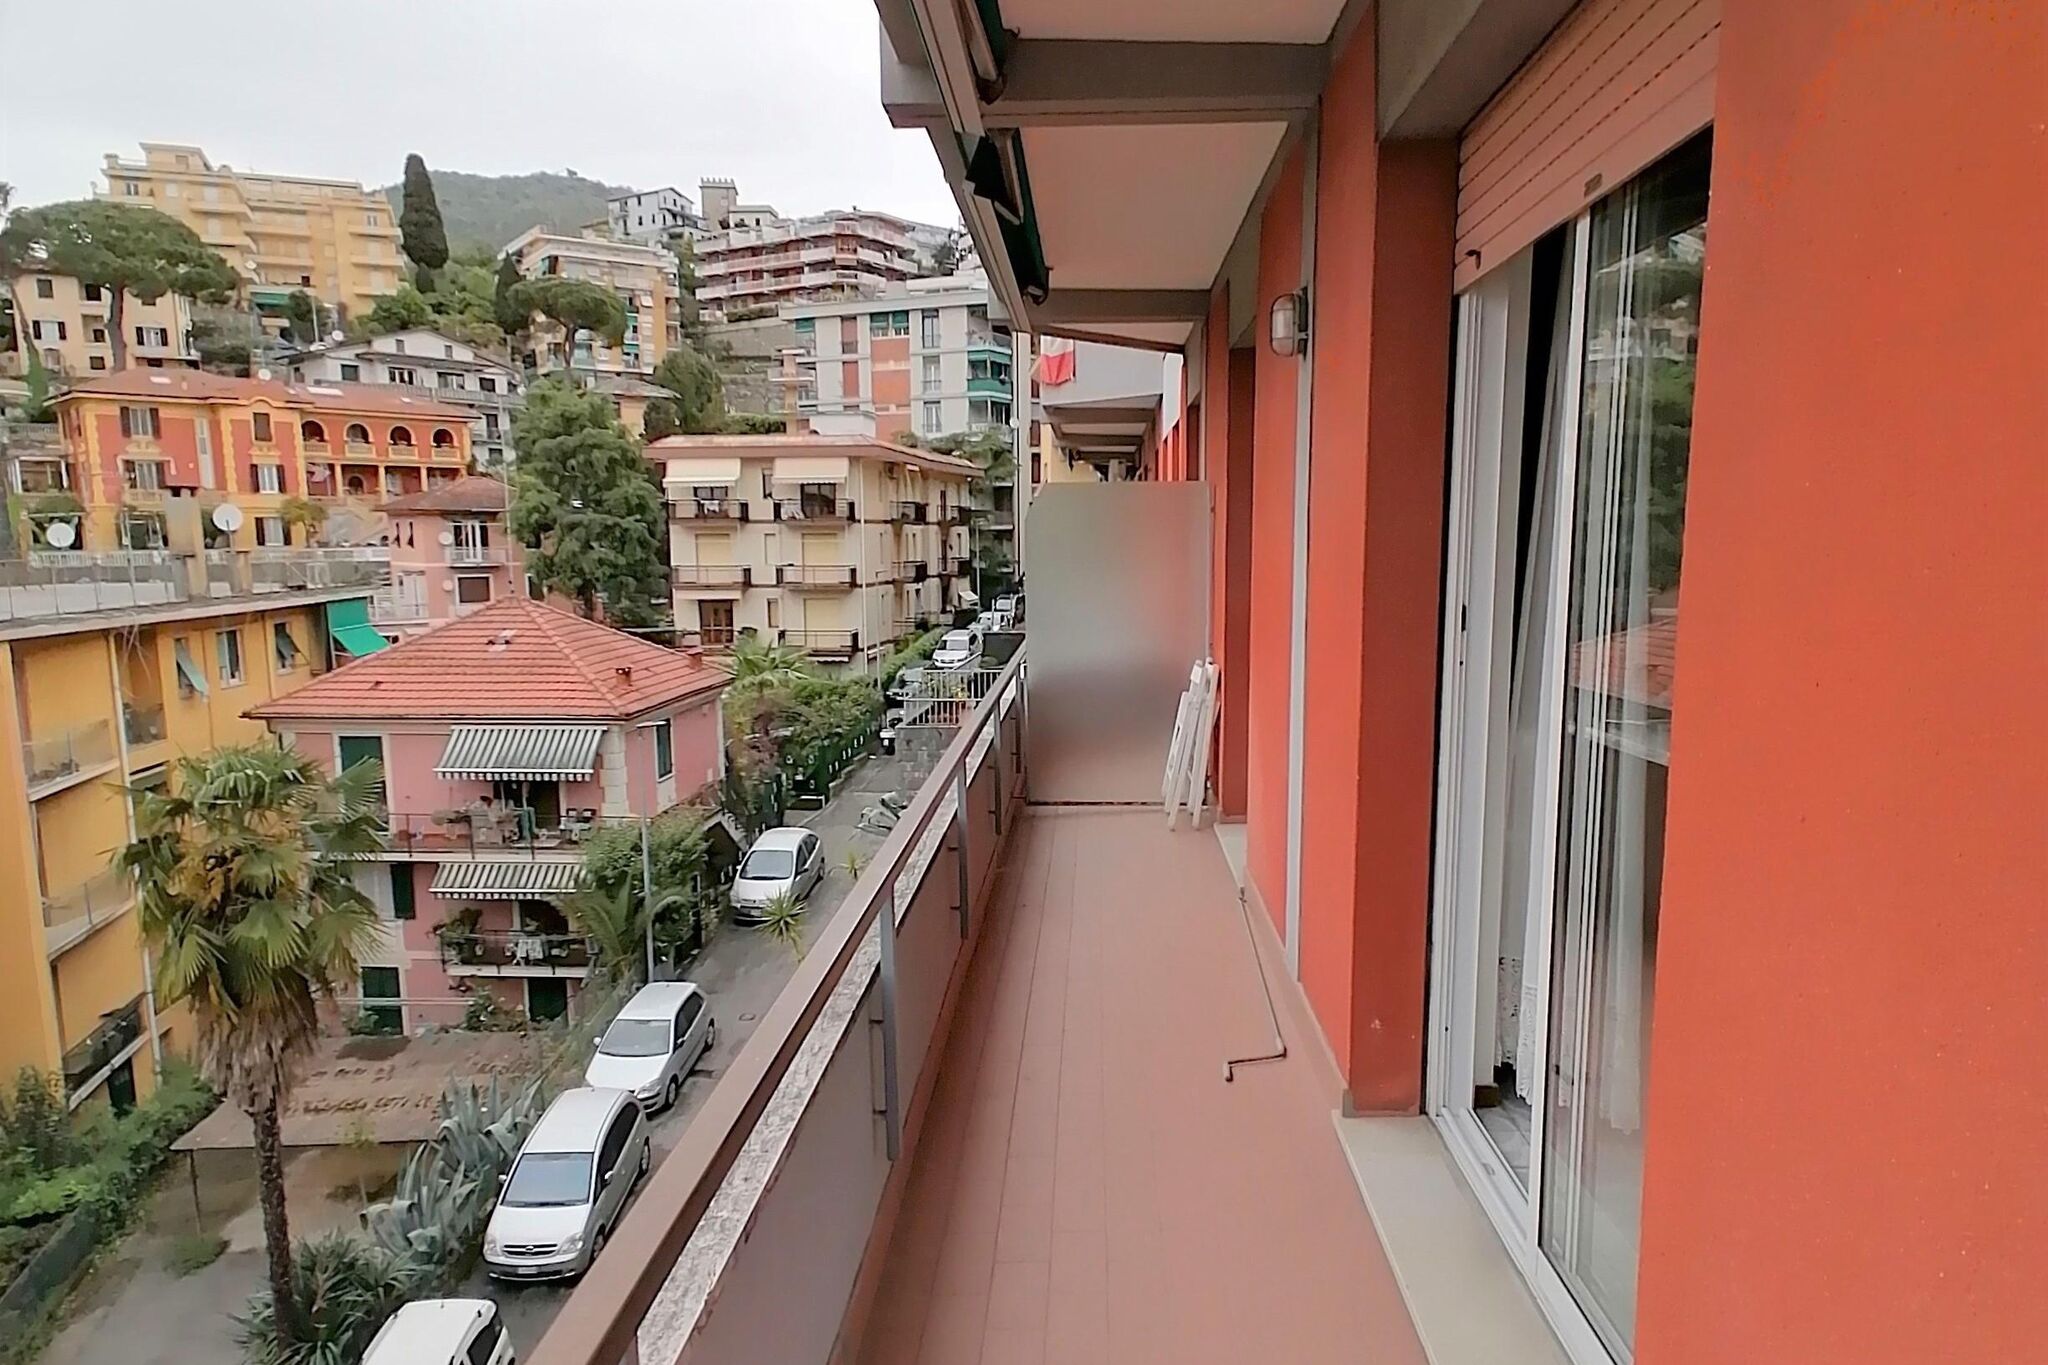 Schönes Ferienhaus in Rapallo mit Balkon oder Terrasse